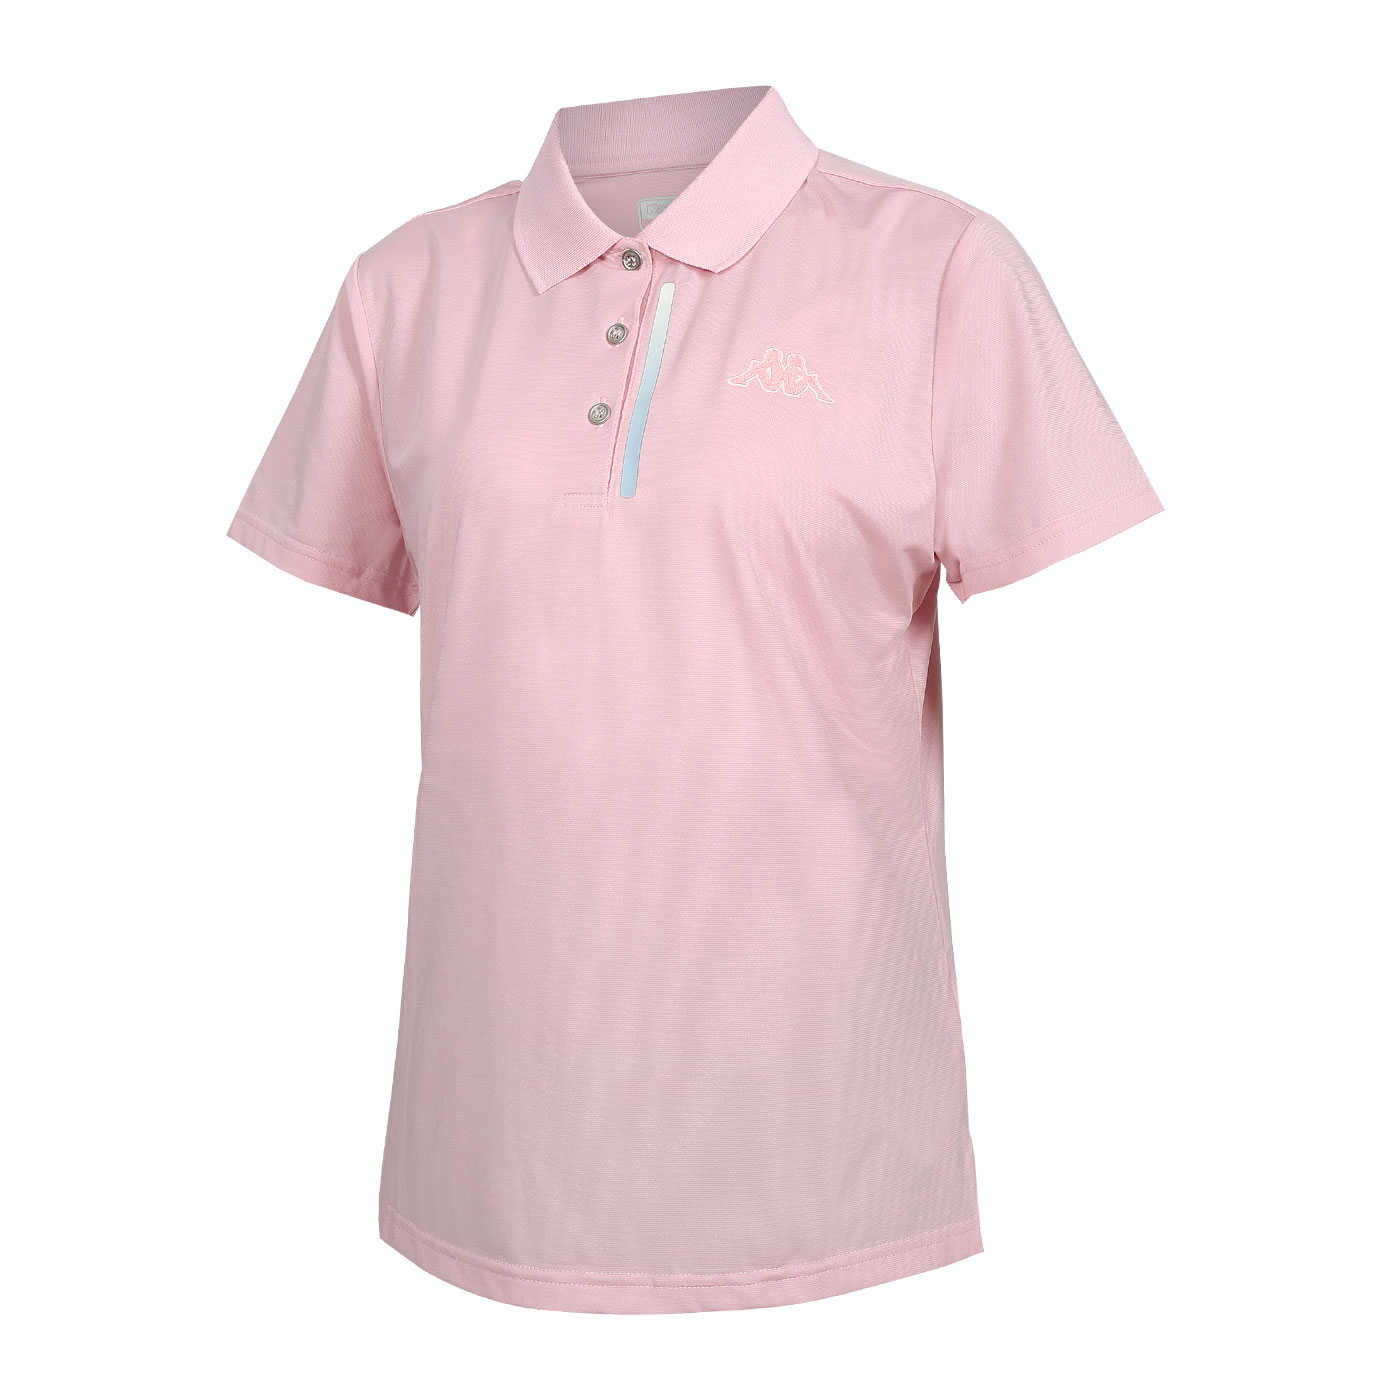 KAPPA 女款吸濕排汗短袖POLO衫  351W58W-XTS - 粉紅灰白